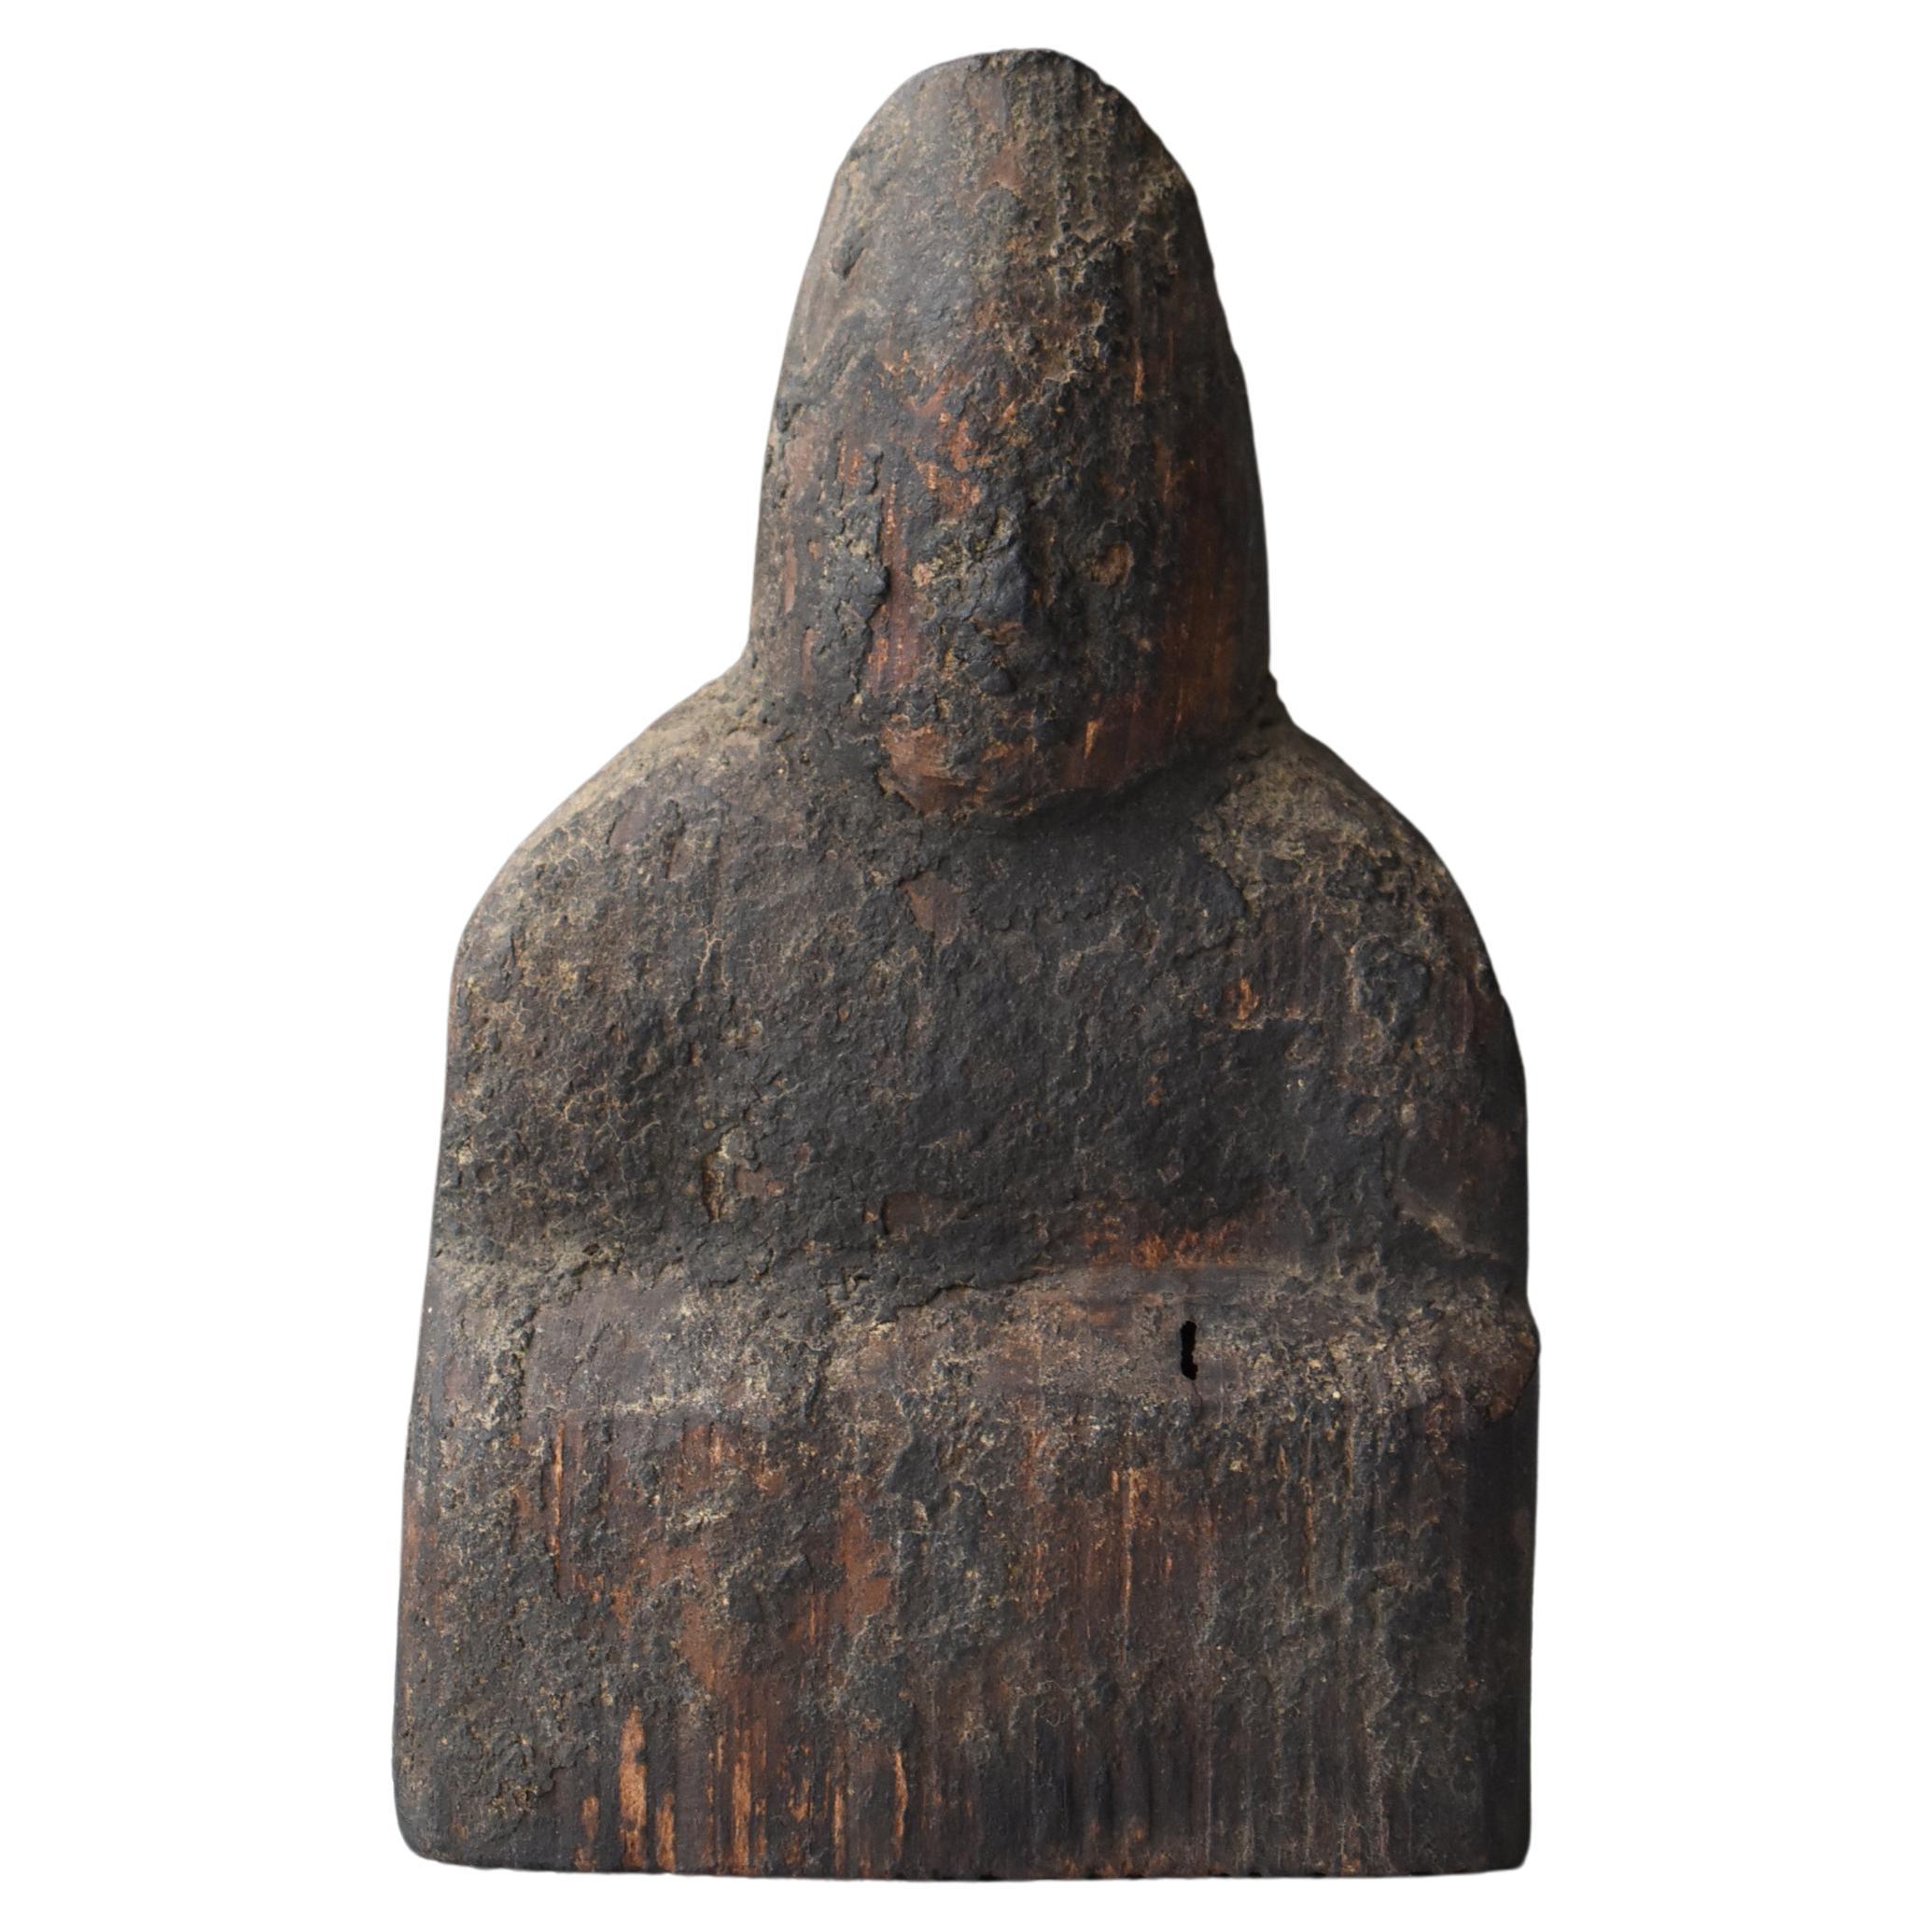 Objet japonais ancien en bois sculpté représentant un dieu masculin 1600s-1700s / Objet figuratif Wabi Sabi